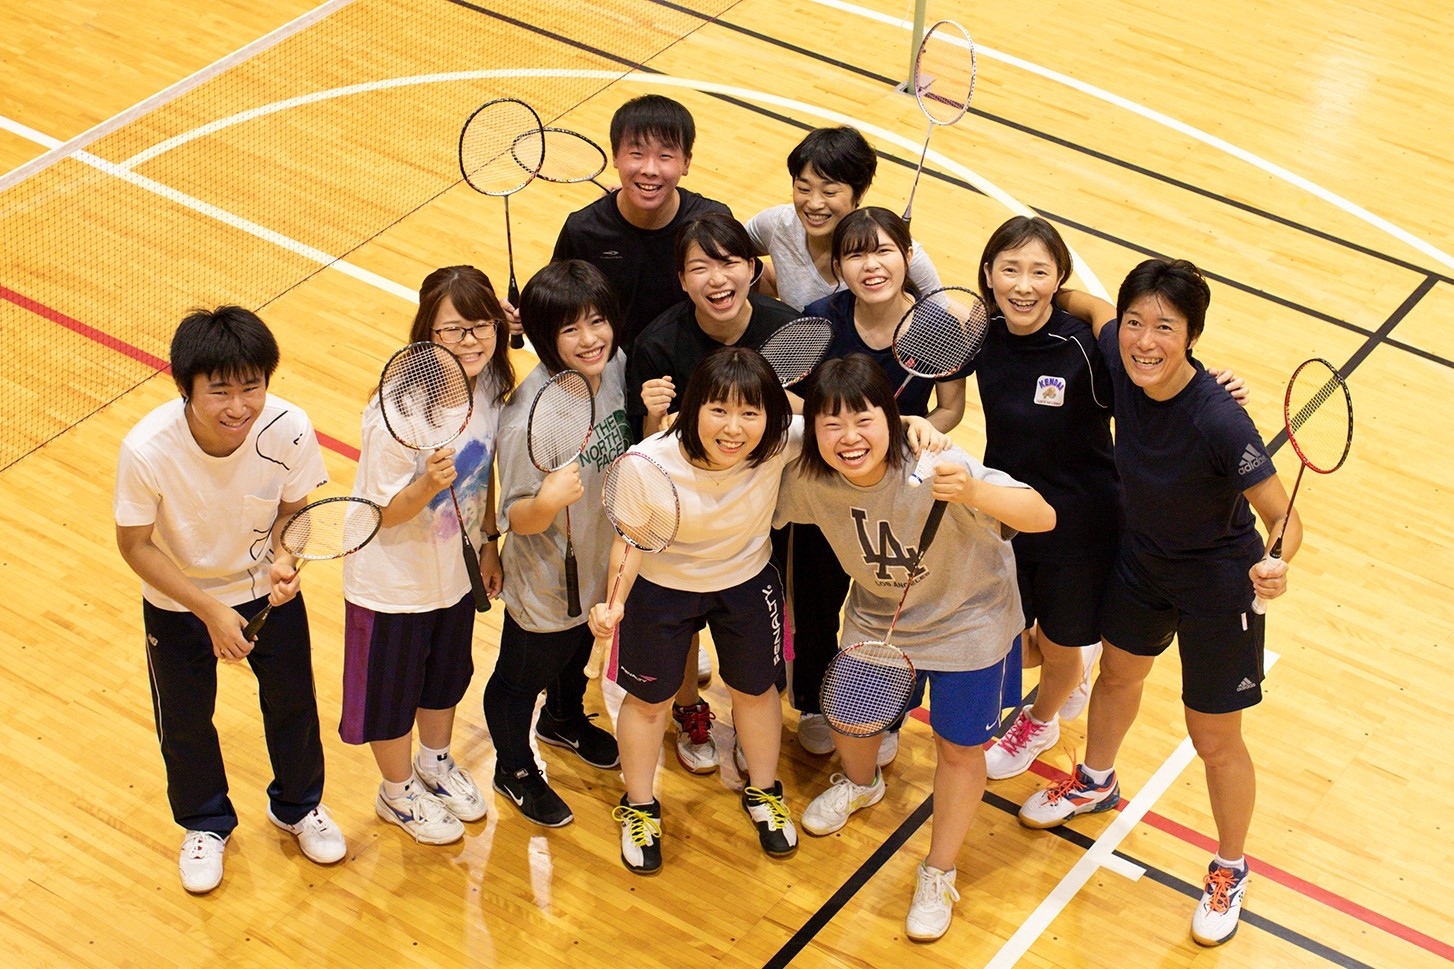 スポーツ選手への栄養サポートと並行して大学で管理栄養士を養成したい 特集 公益社団法人 日本栄養士会